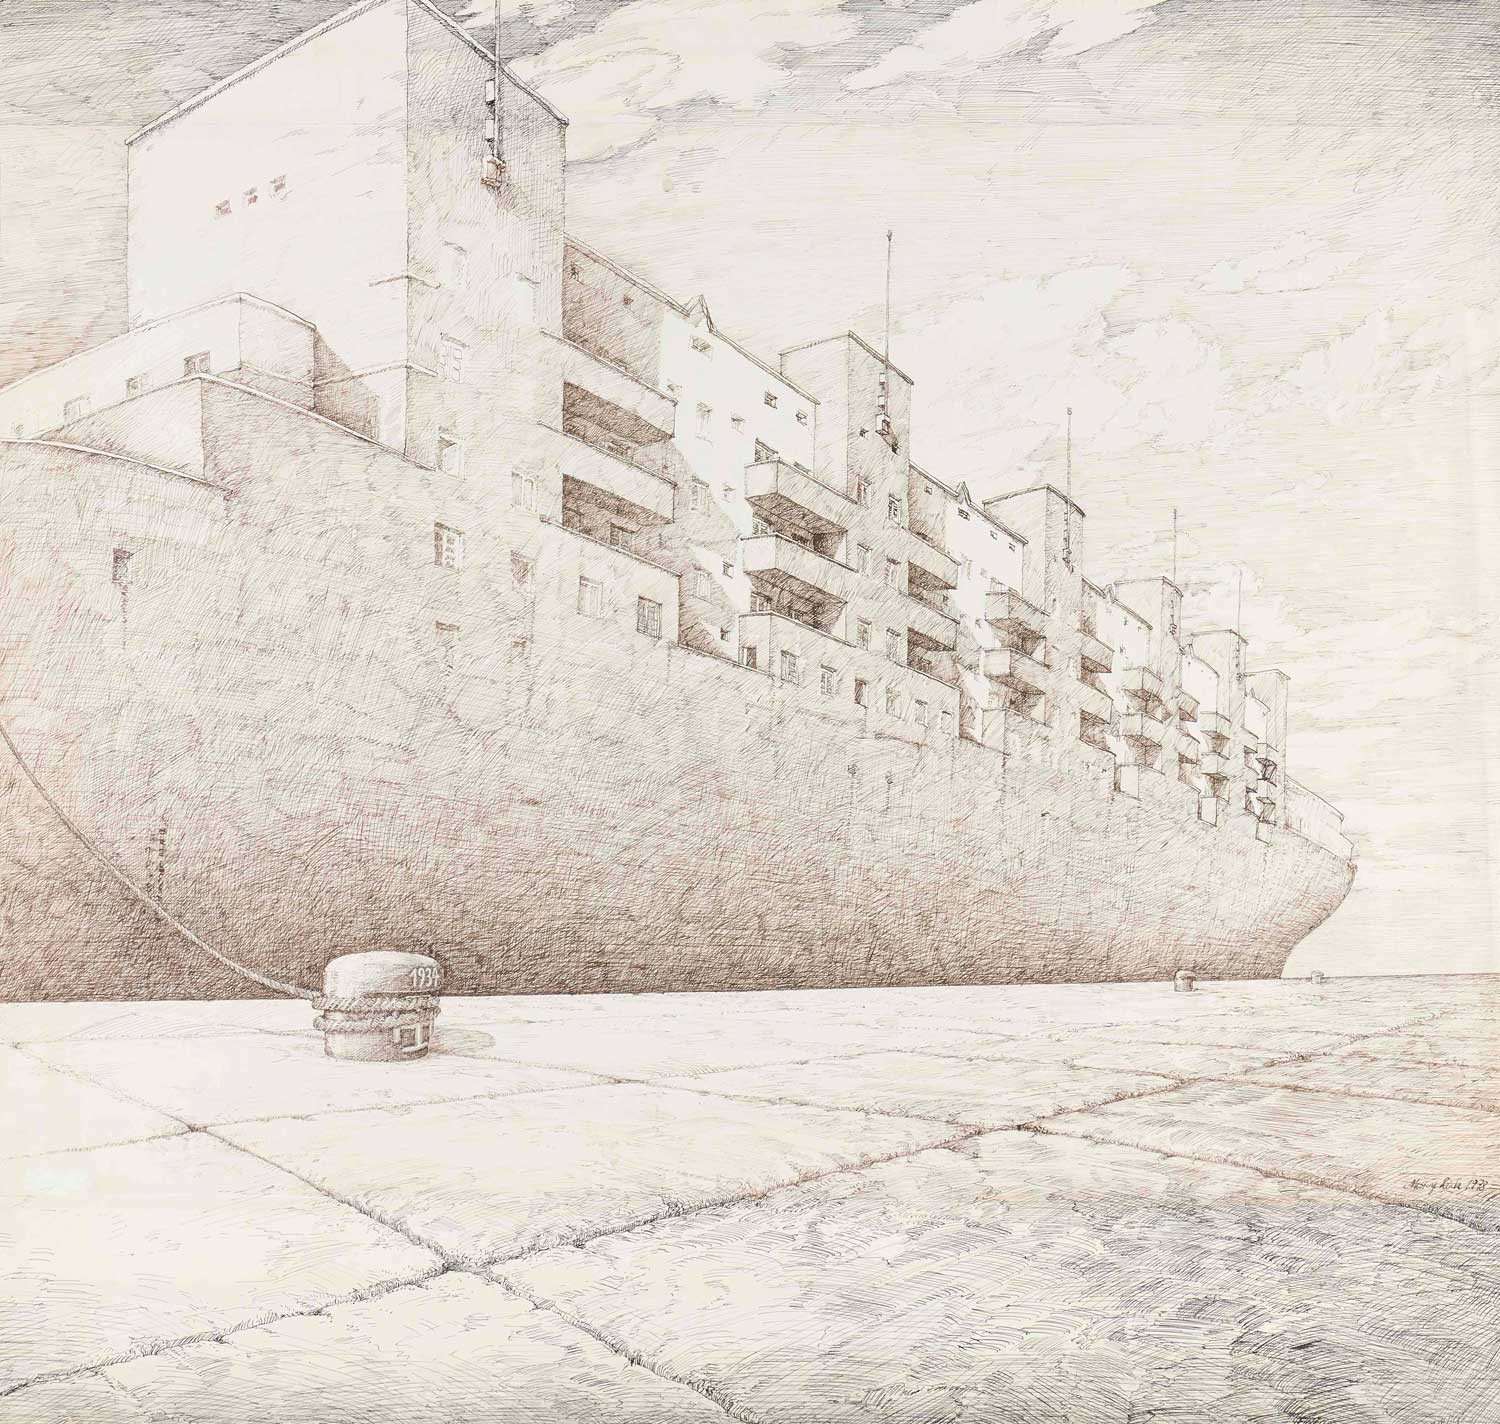 <BODY><div>Missing Link, Das Flaggschiff [The Flagship], 1978 </div><div>© MAK</div><div> </div></BODY>